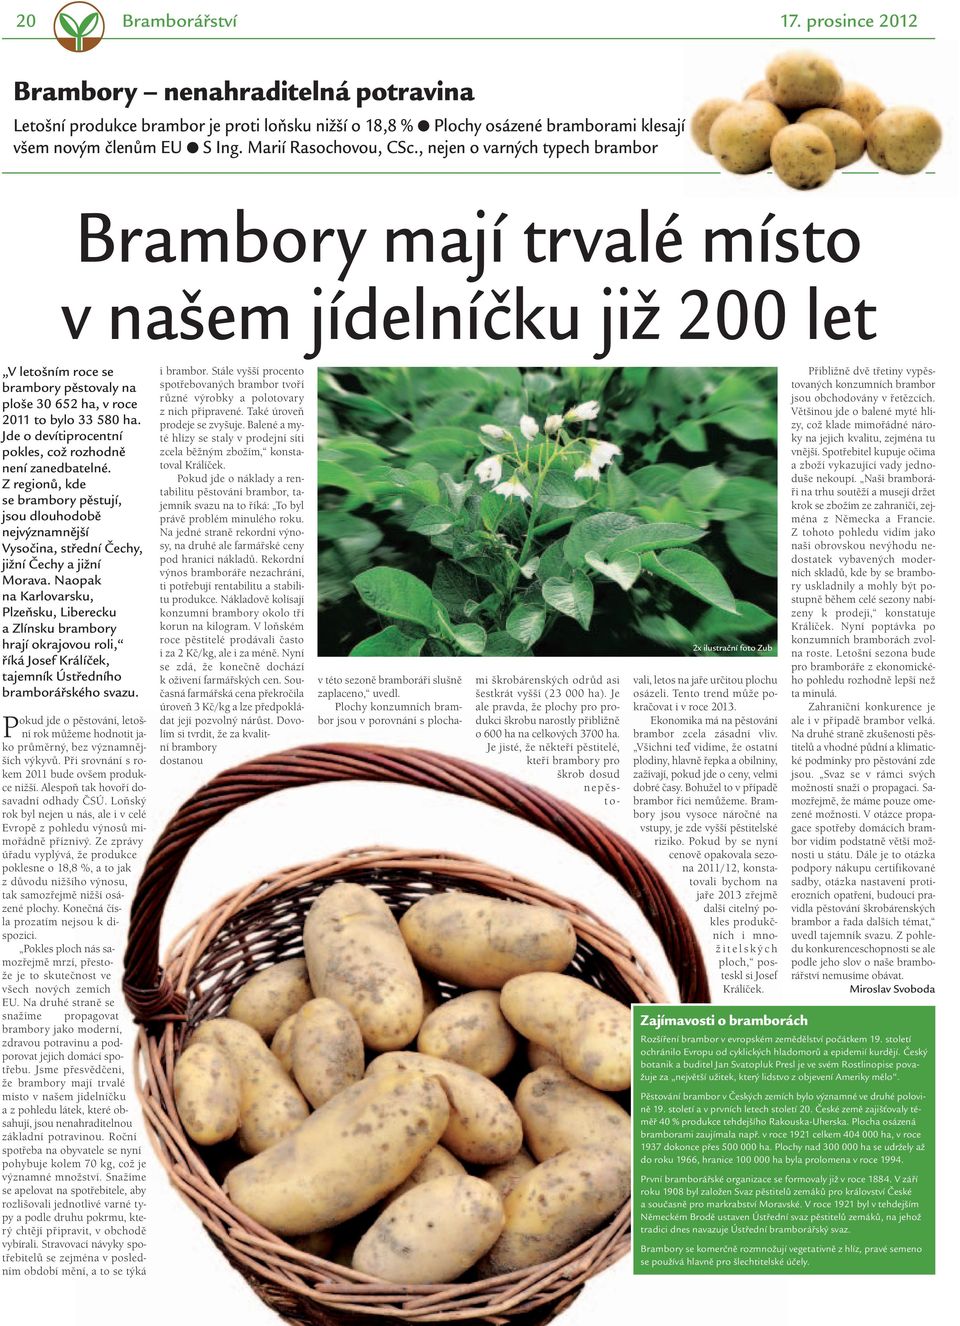 , nejen o varných typech brambor Brambory mají trvalé místo v našem jídelníčku již 200 let V letošním roce se brambory pěstovaly na ploše 30 652 ha, v roce 2011 to bylo 33 580 ha.